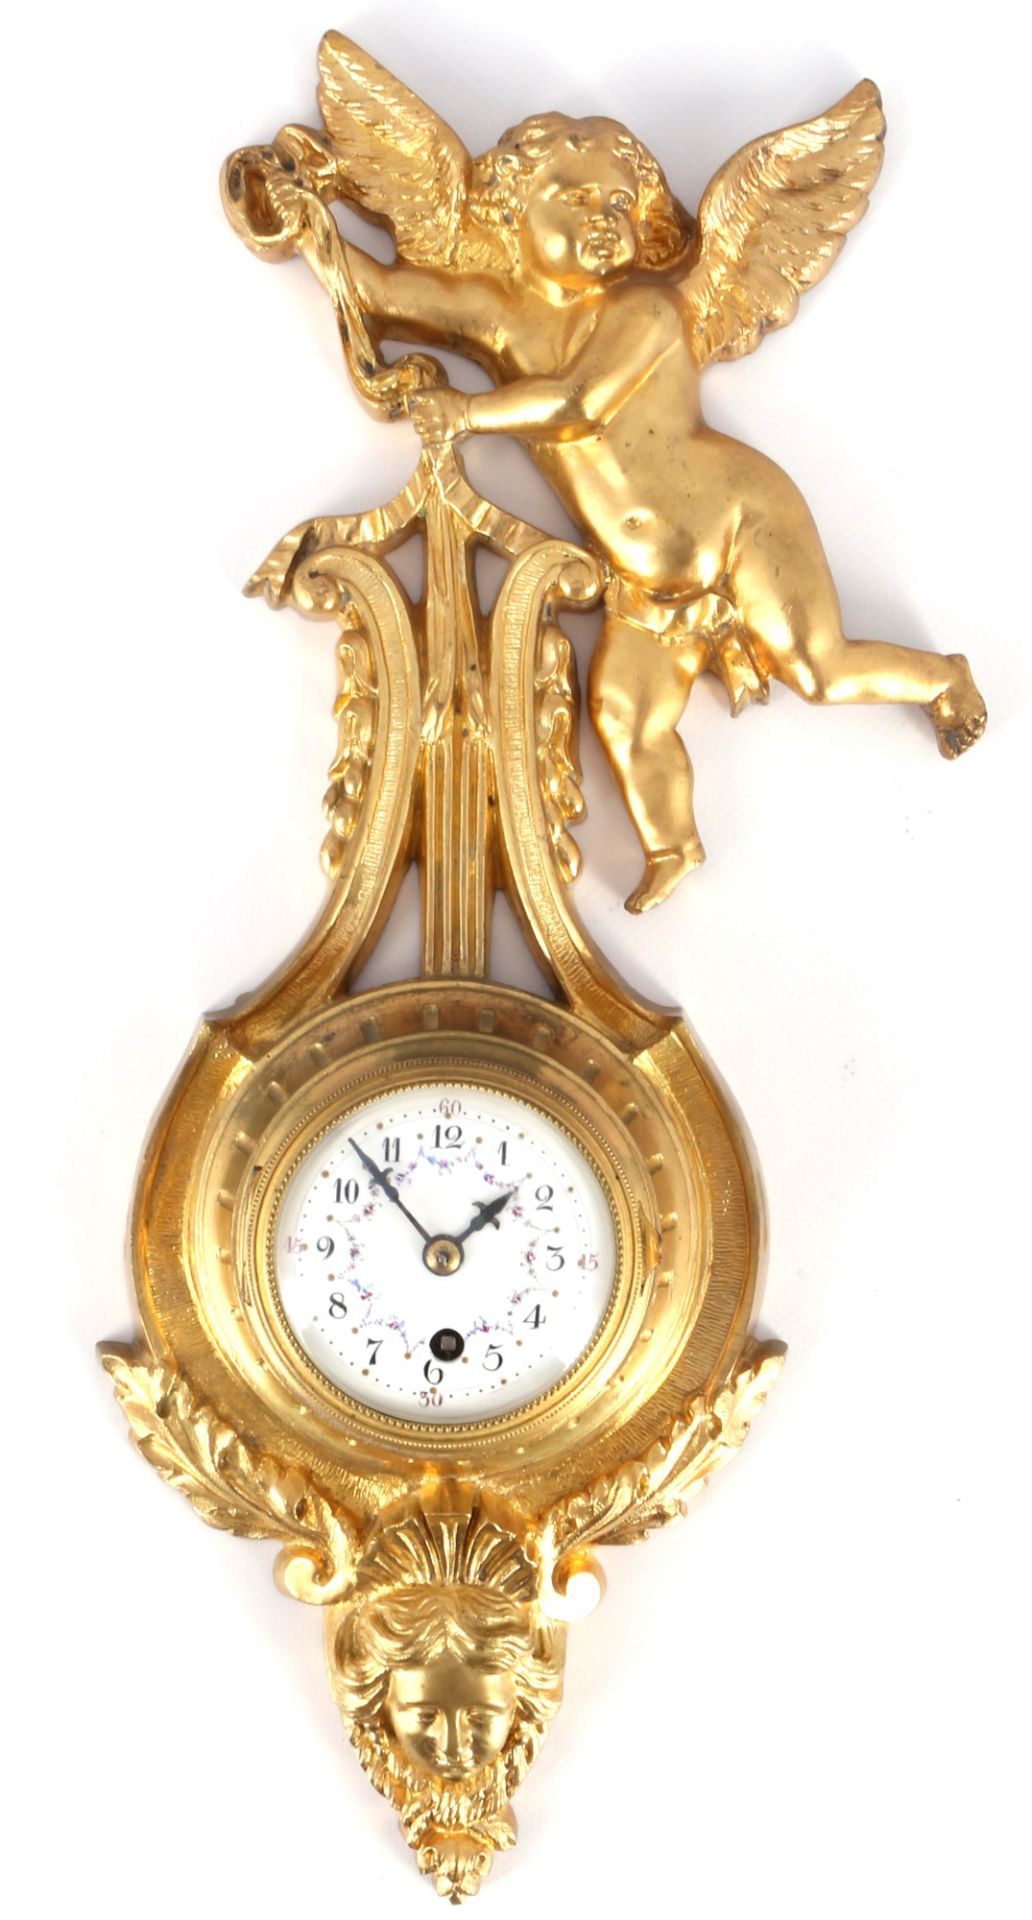 Bronze Wanduhr mit Putto um 1900, bronze wall clock with putto around 1900,